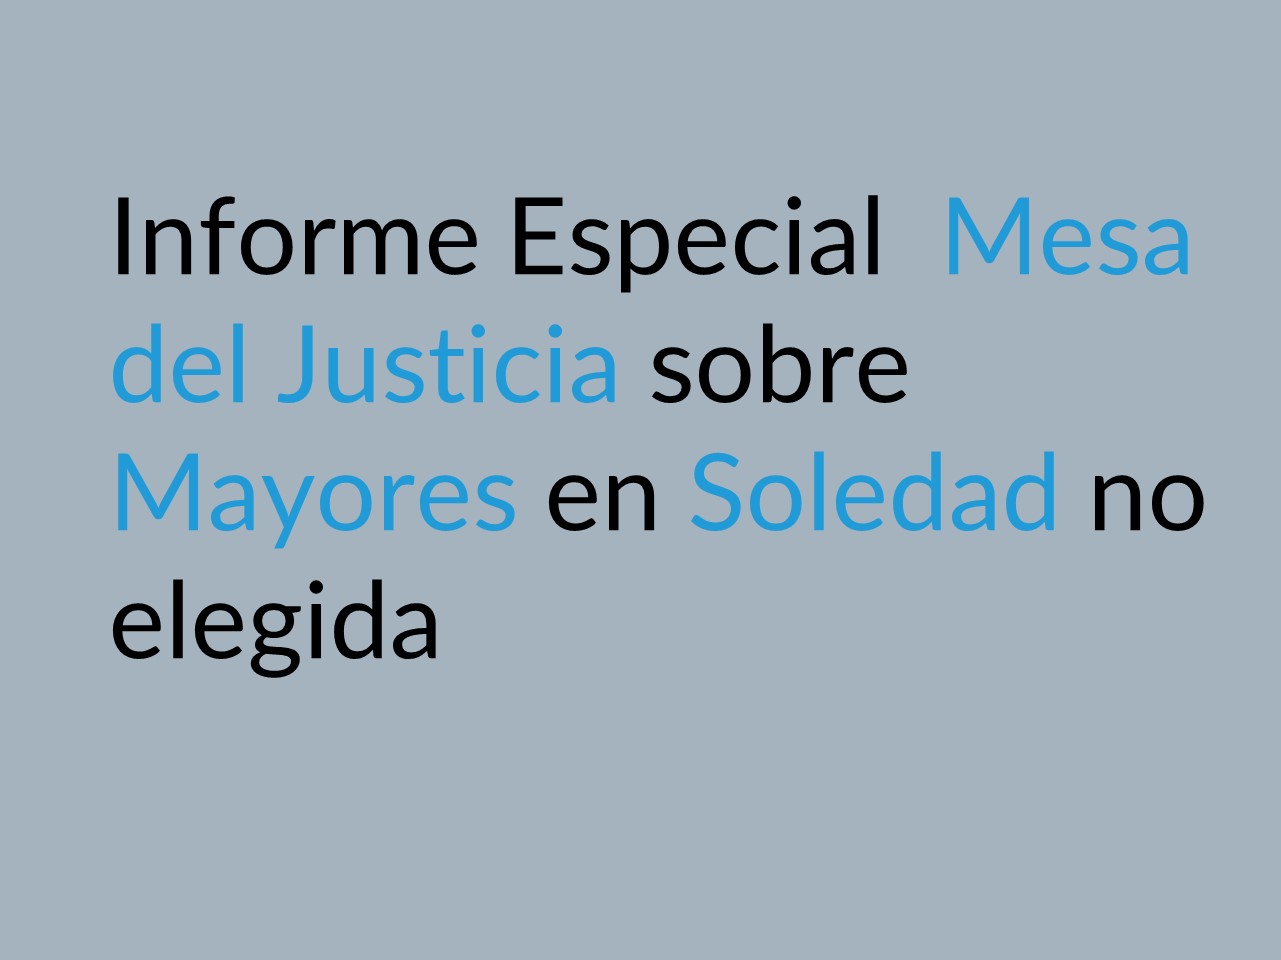 Informe Especial mesa del Justicia sobre Mayores en Soledad no elegida - Enlace al Documento Pdf